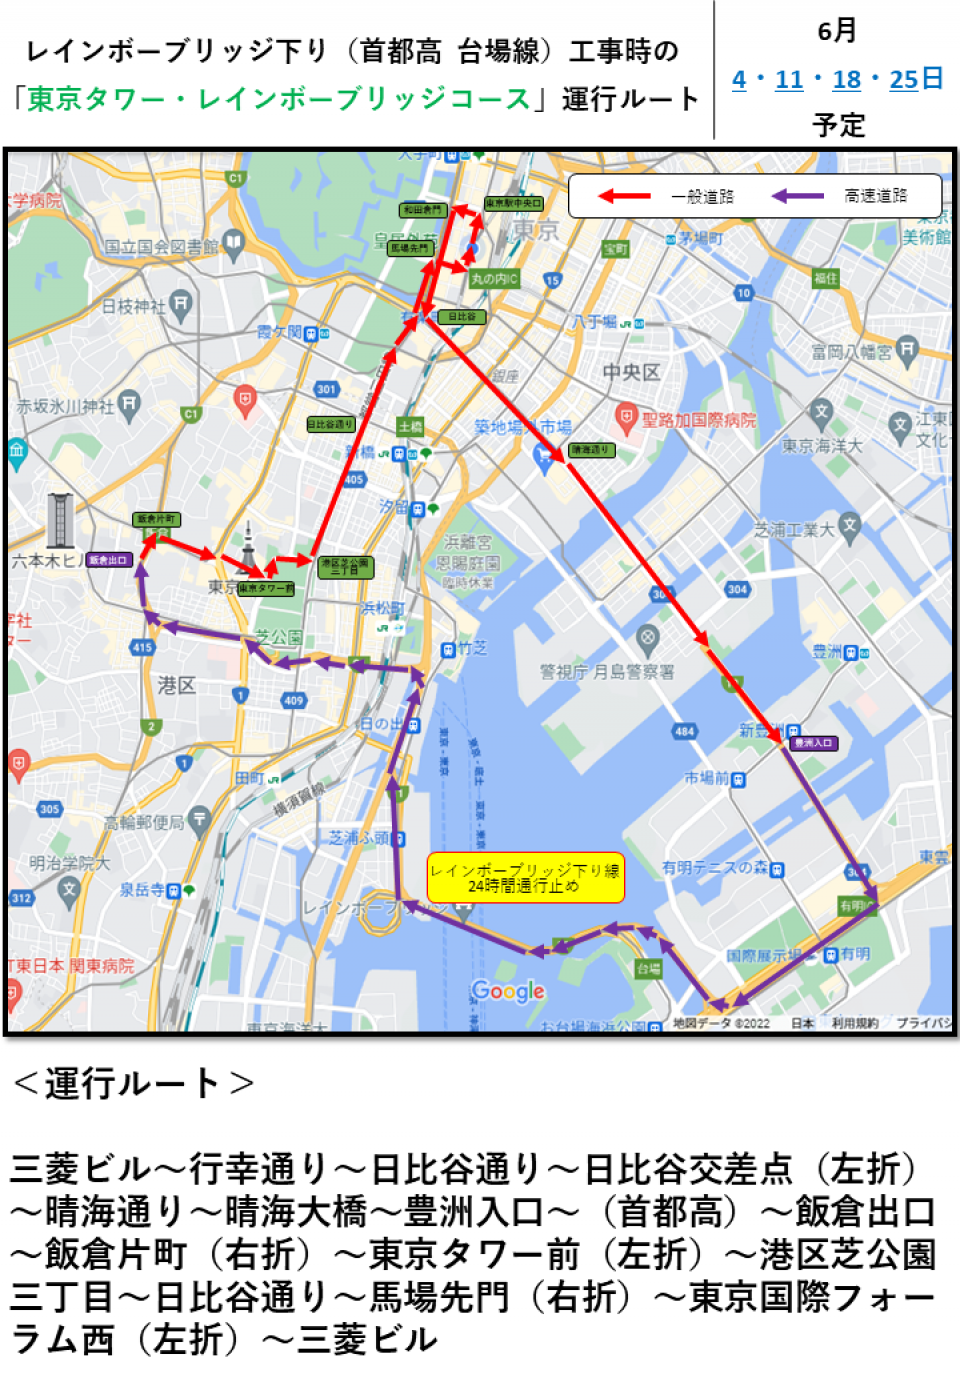 レインボーブリッジ下り線工事のため、「東京タワー・レインボーブリッジコース」の運行ルートを変更のお知らせ